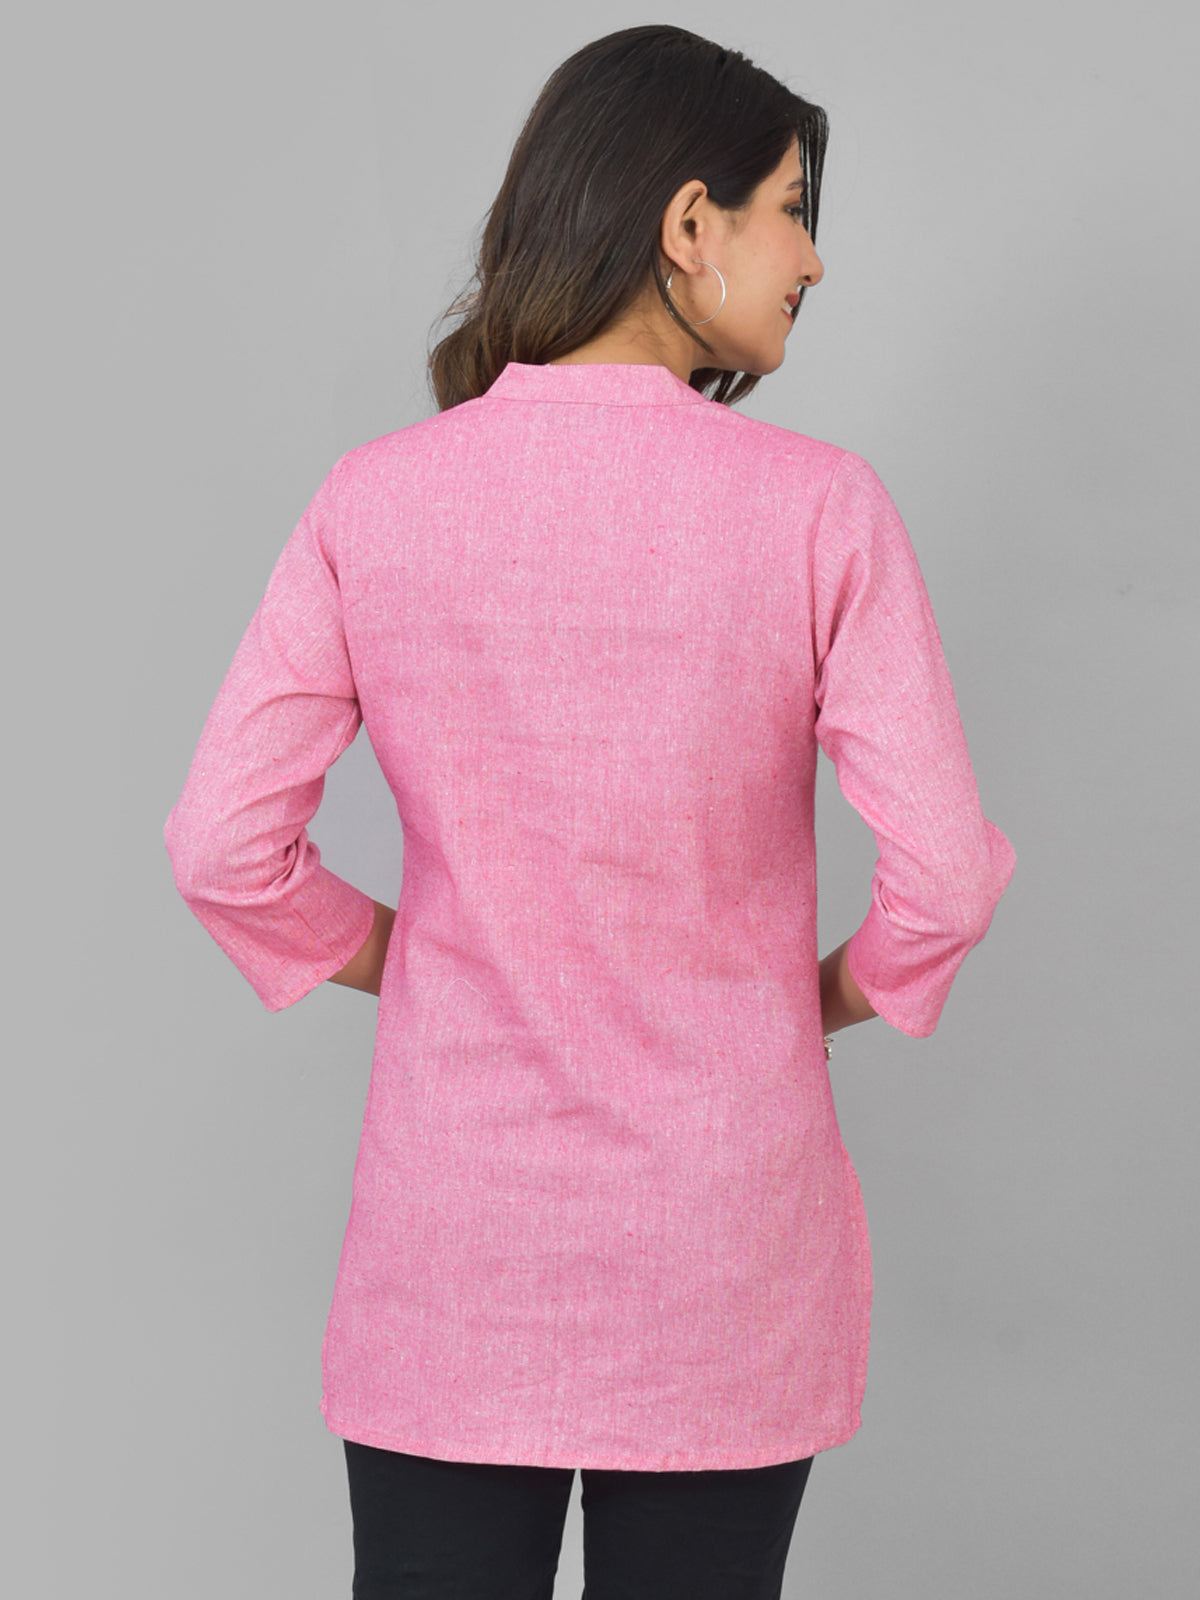 Womens Pink Woven Design Handloom Cotton Frontslit Short Kurti